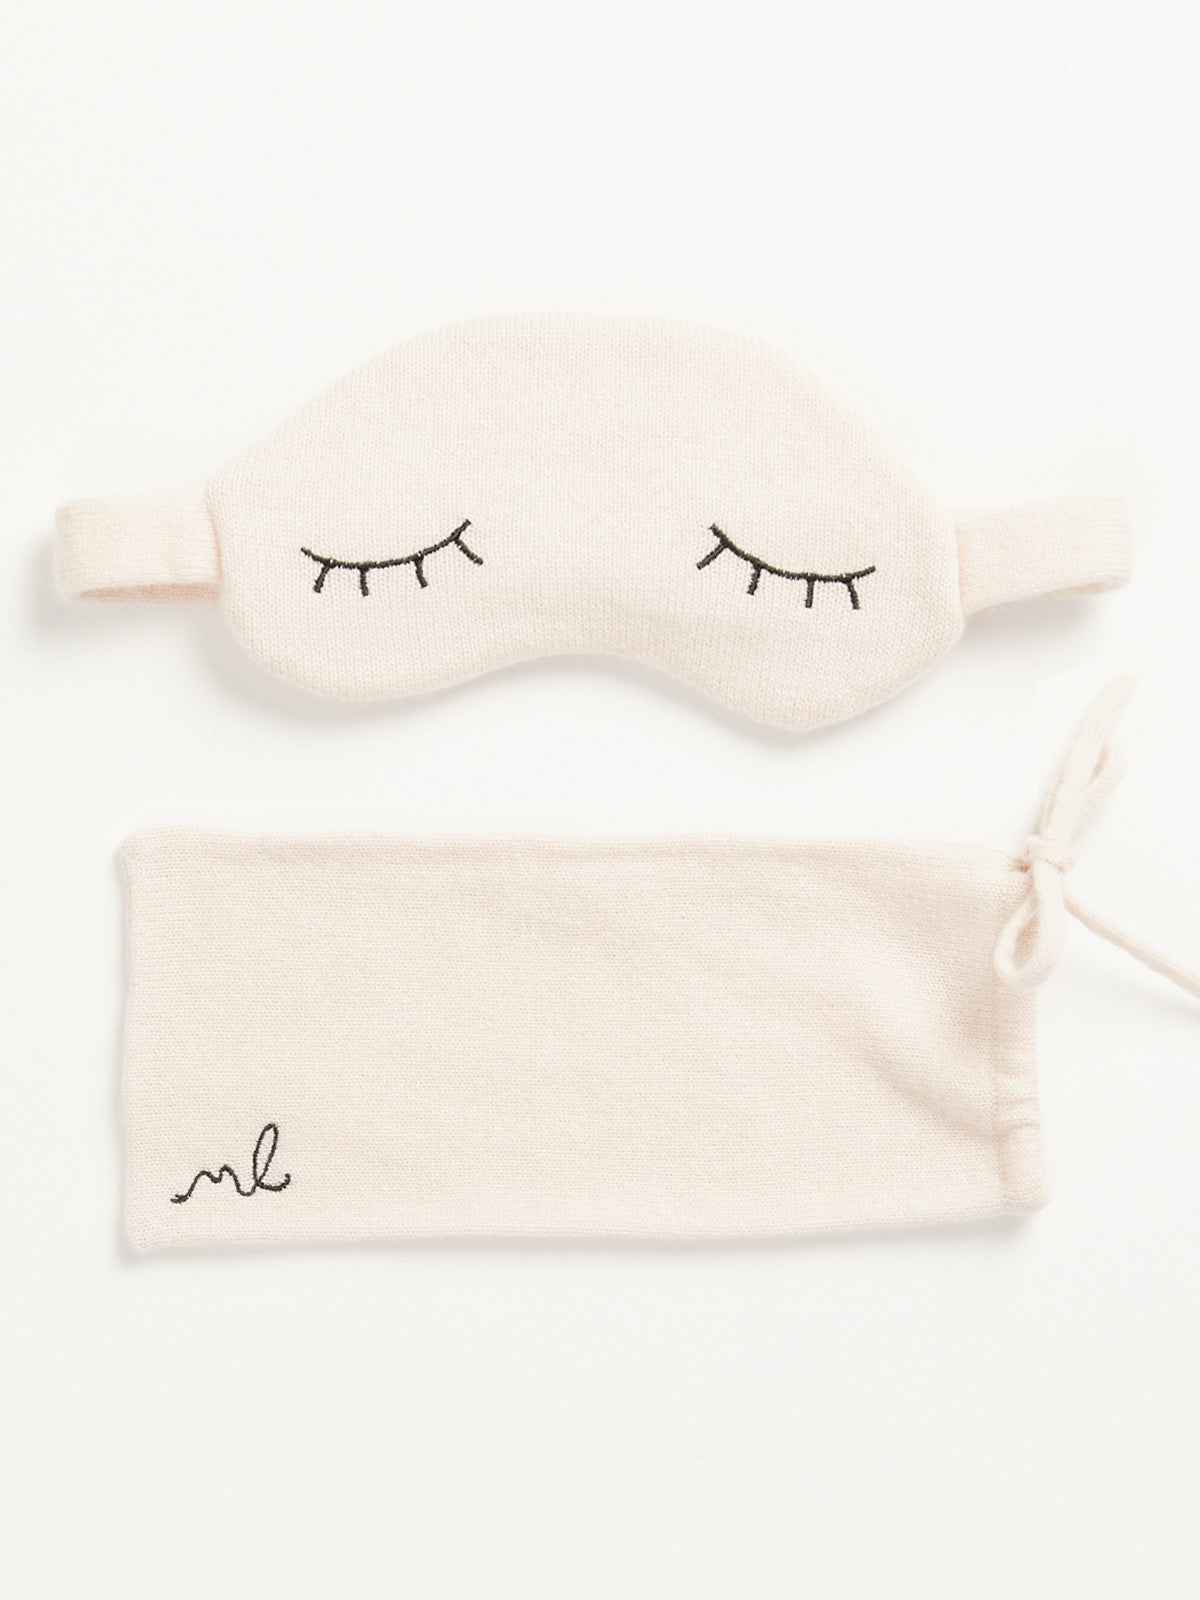 Sleepy Lids Cashmere Mask Set By Morgan Lane